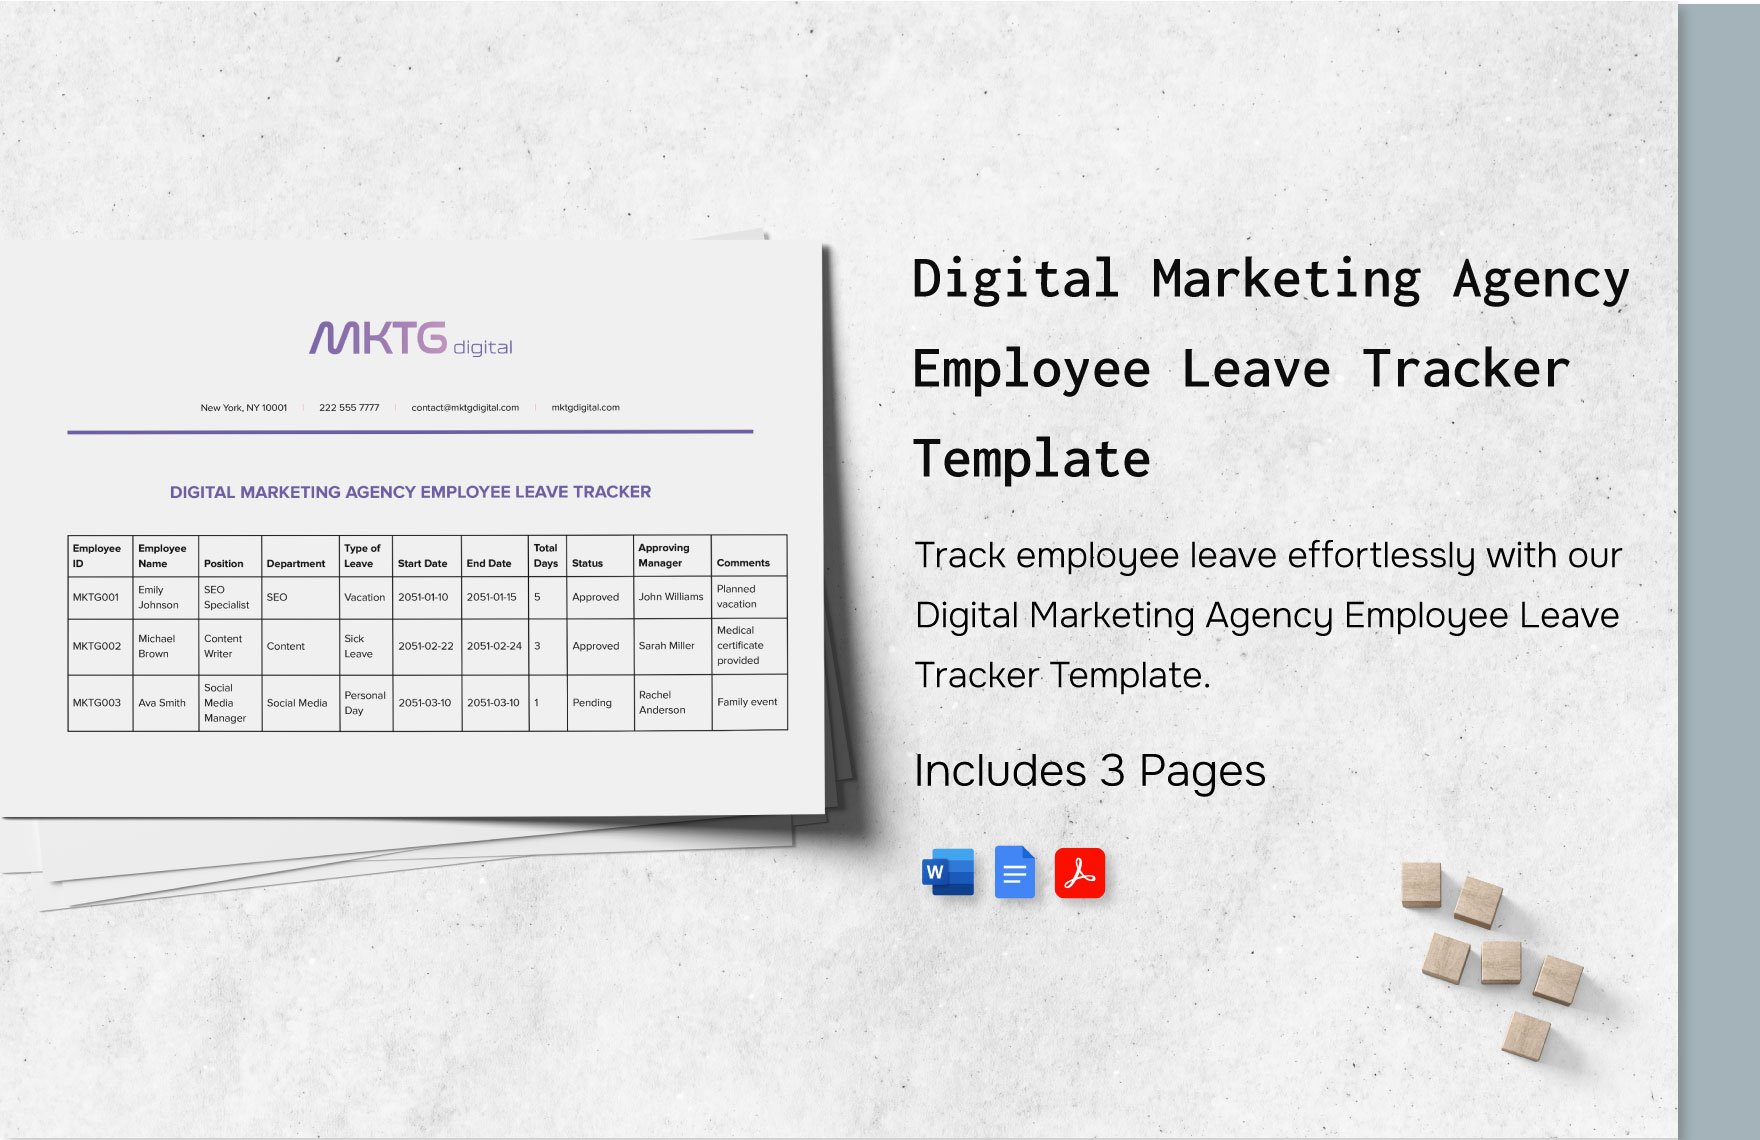 Digital Marketing Agency Employee Leave Tracker Template